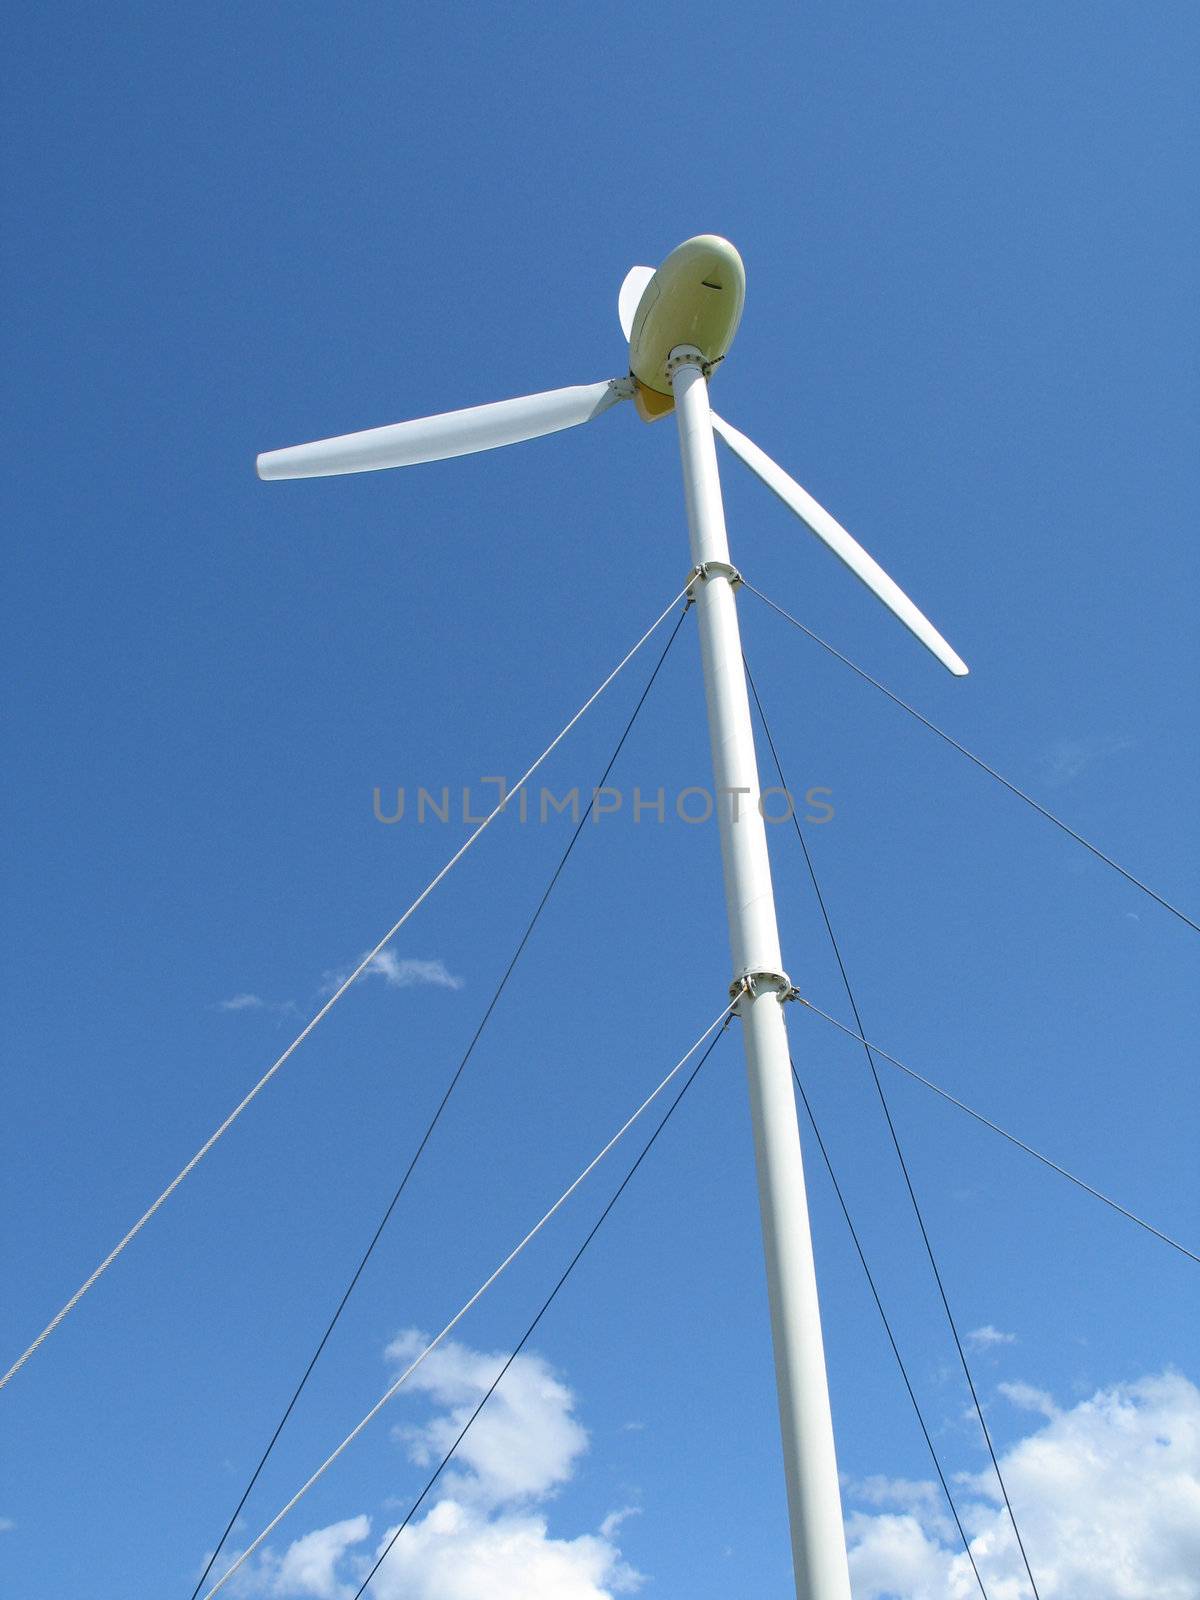 wind turbine in the blue sky by mmm